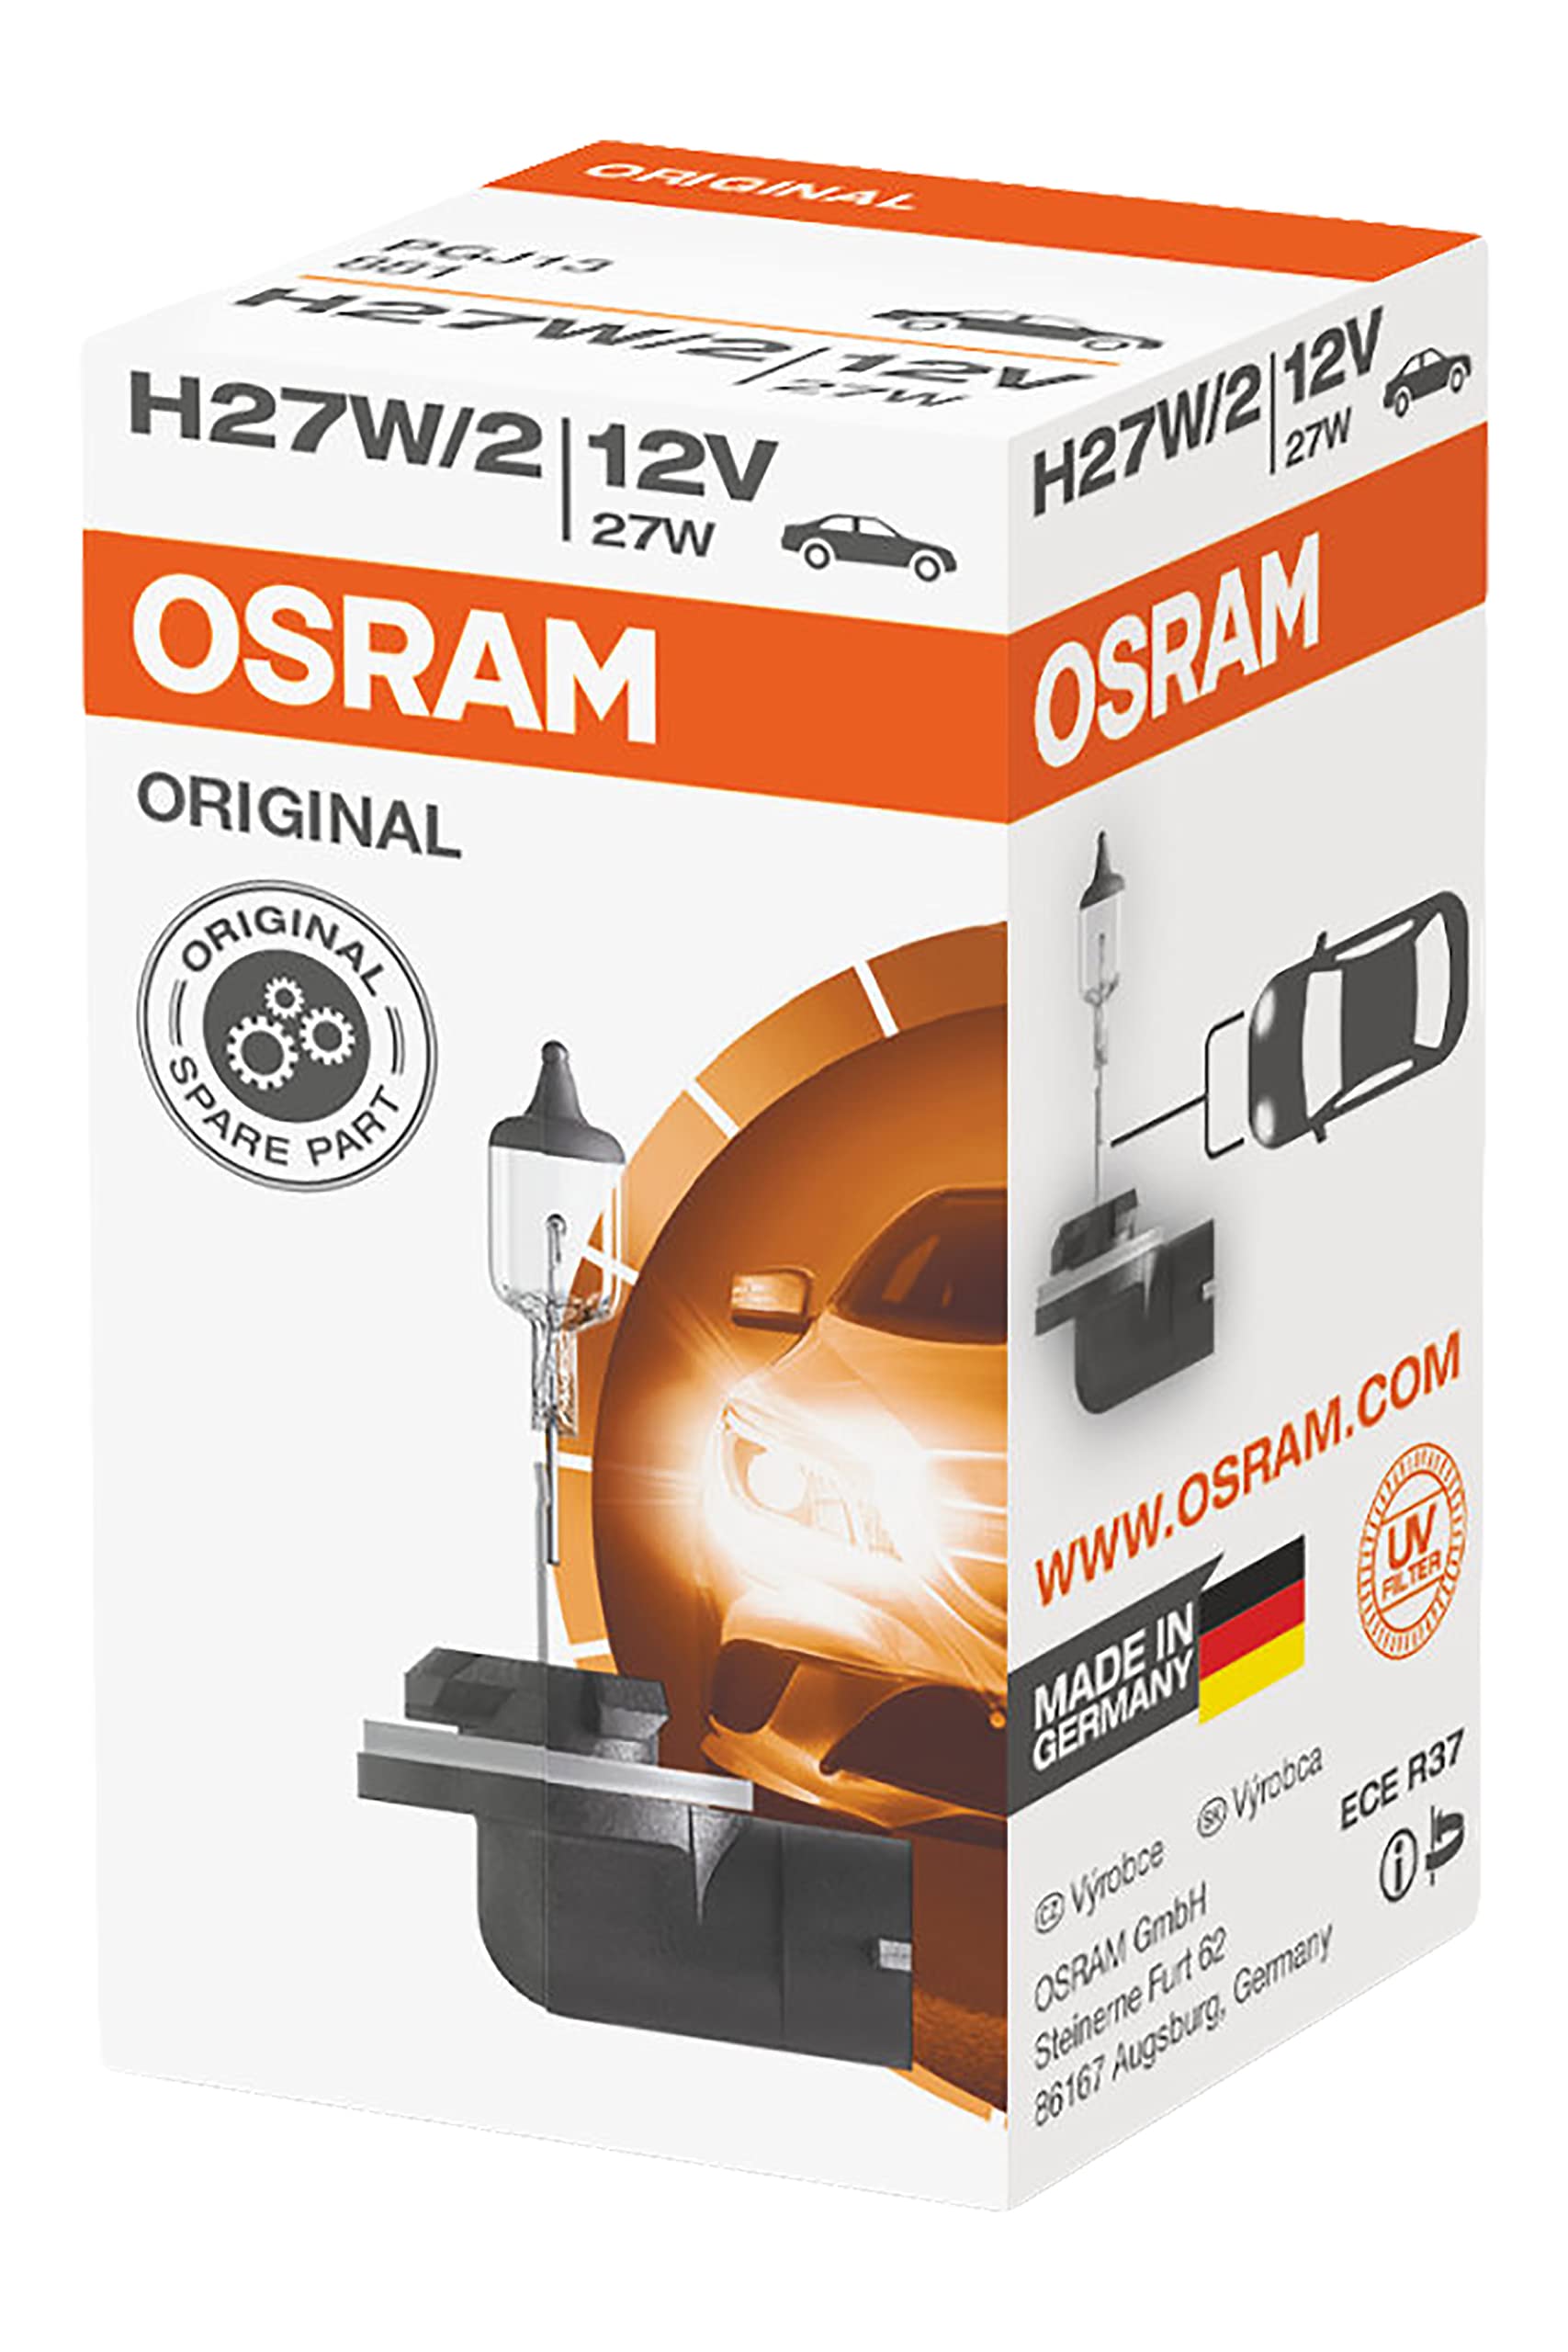 Osram 881 Lampe, H27/2, 12V, 27W, PGJ13, 1 Stück im Karton von Osram